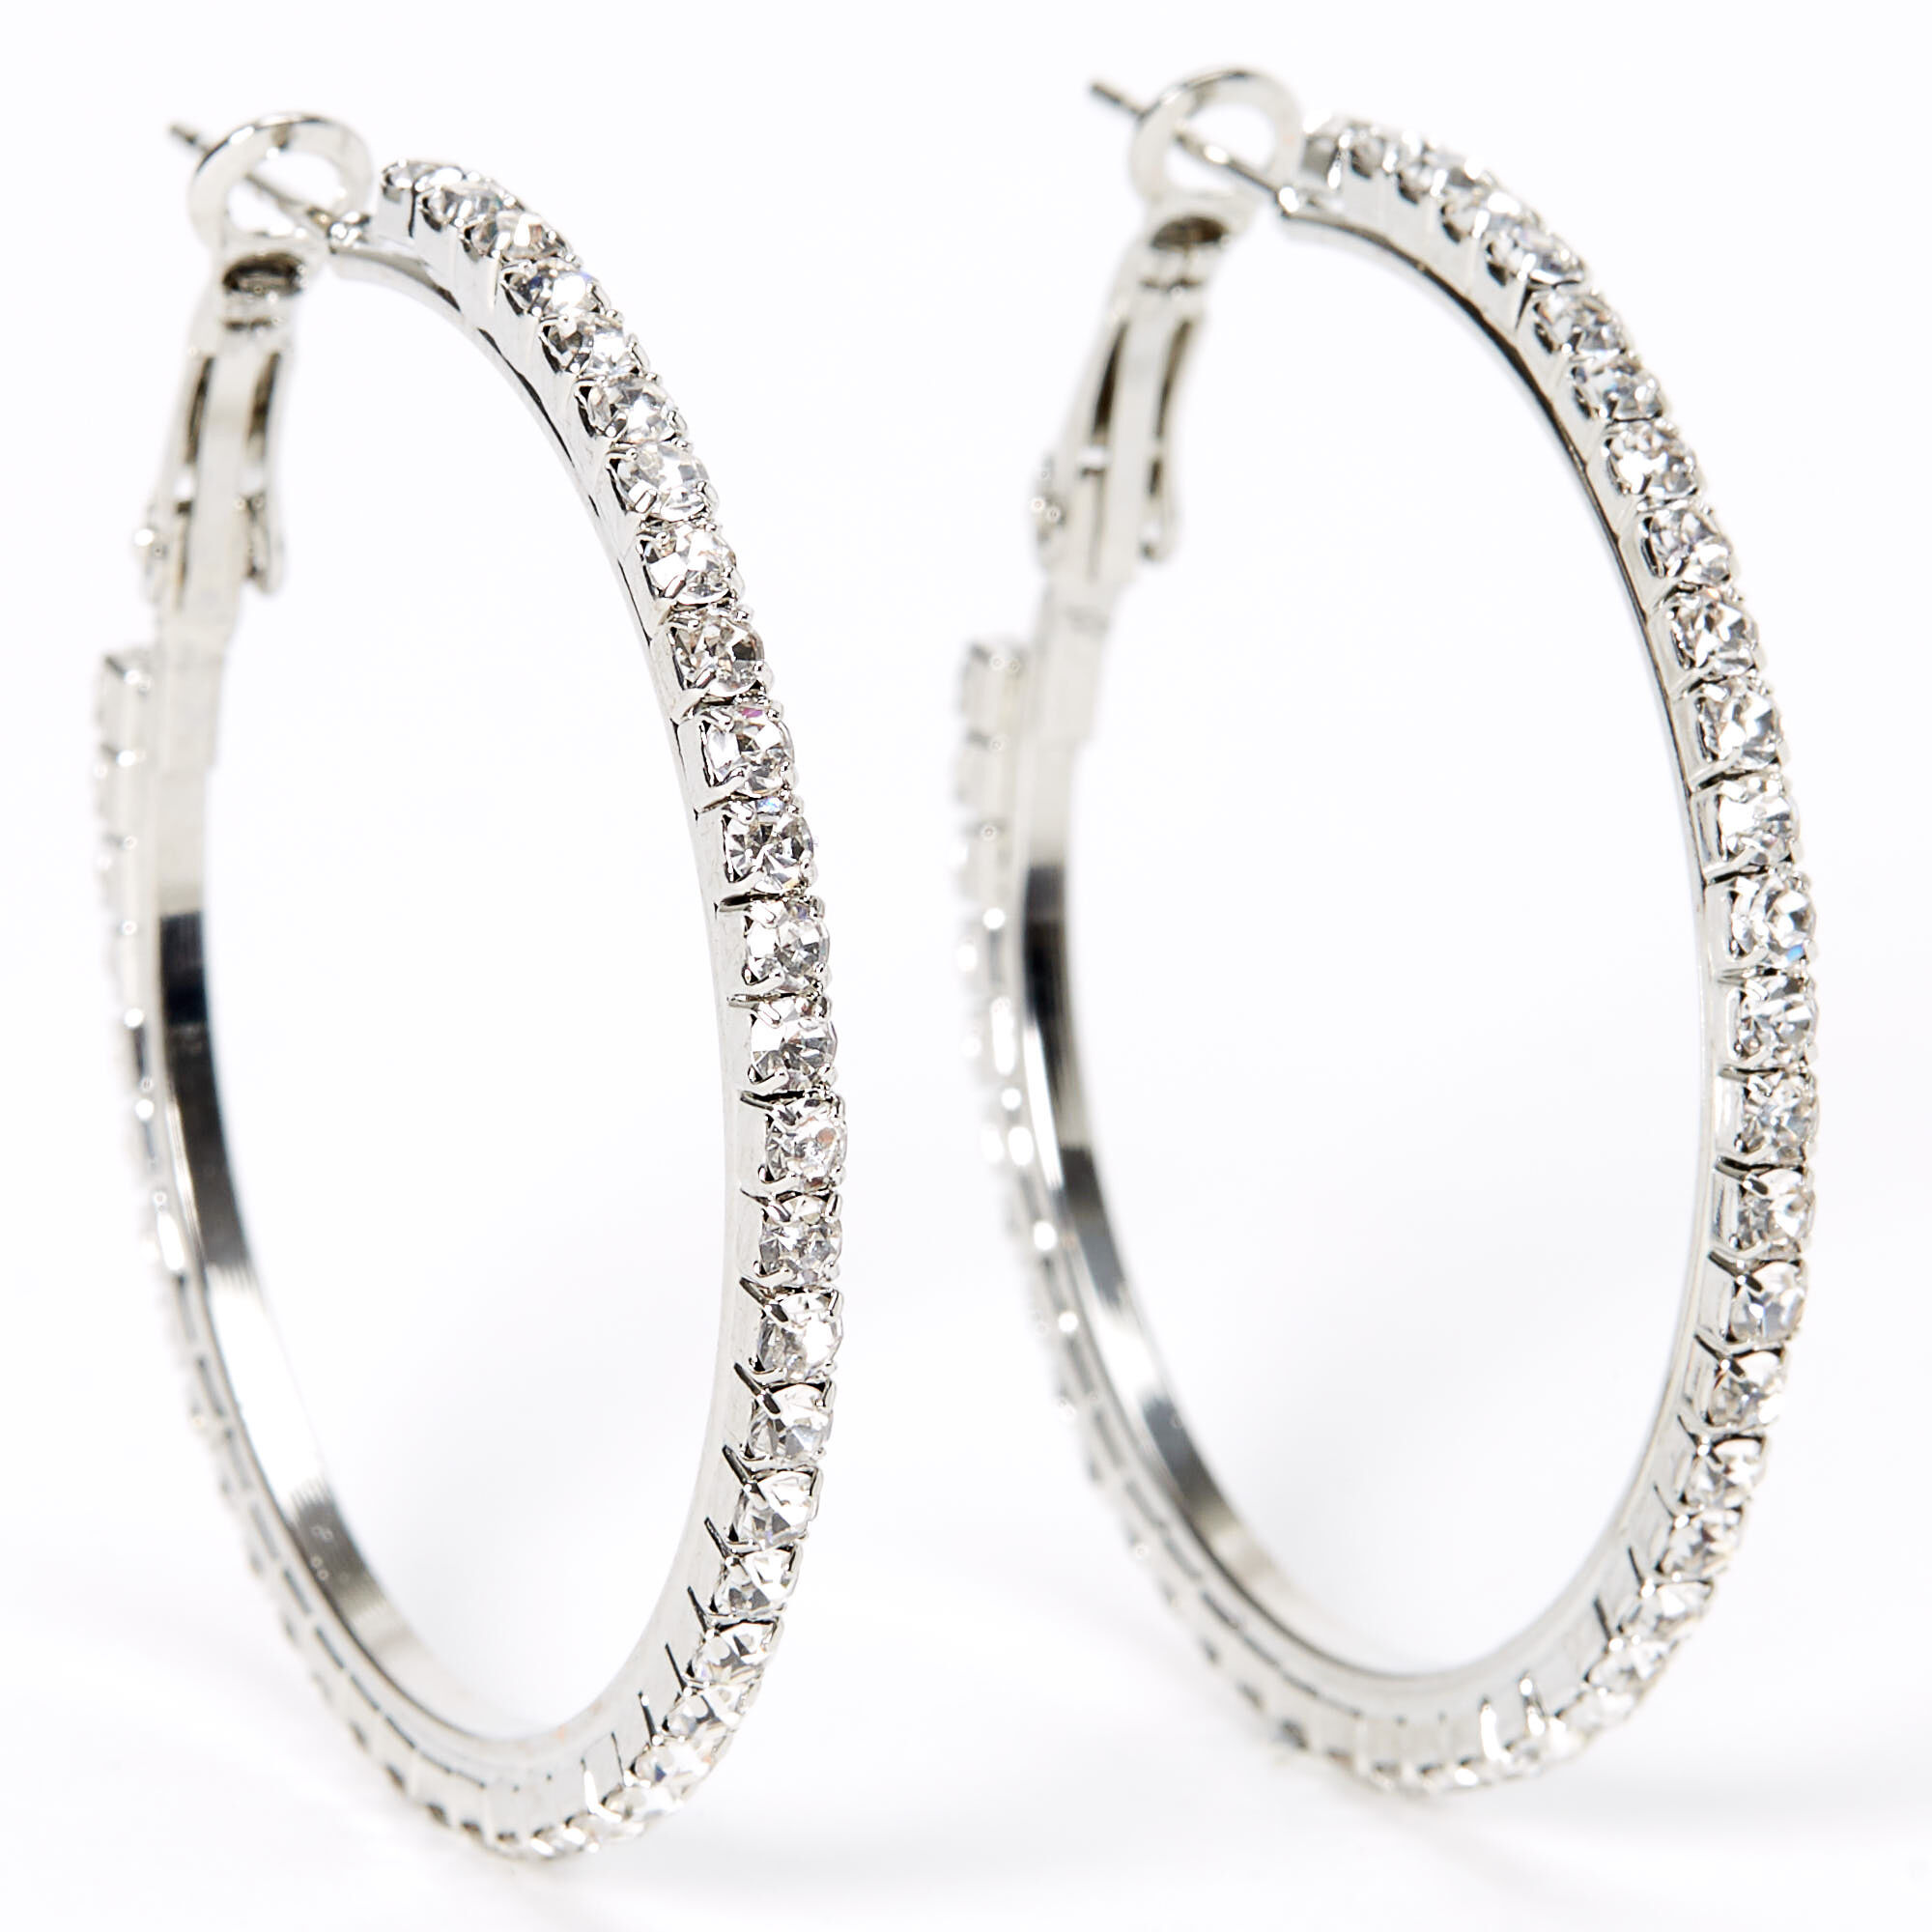 Glitter Hoop Earrings in Sterling Silver